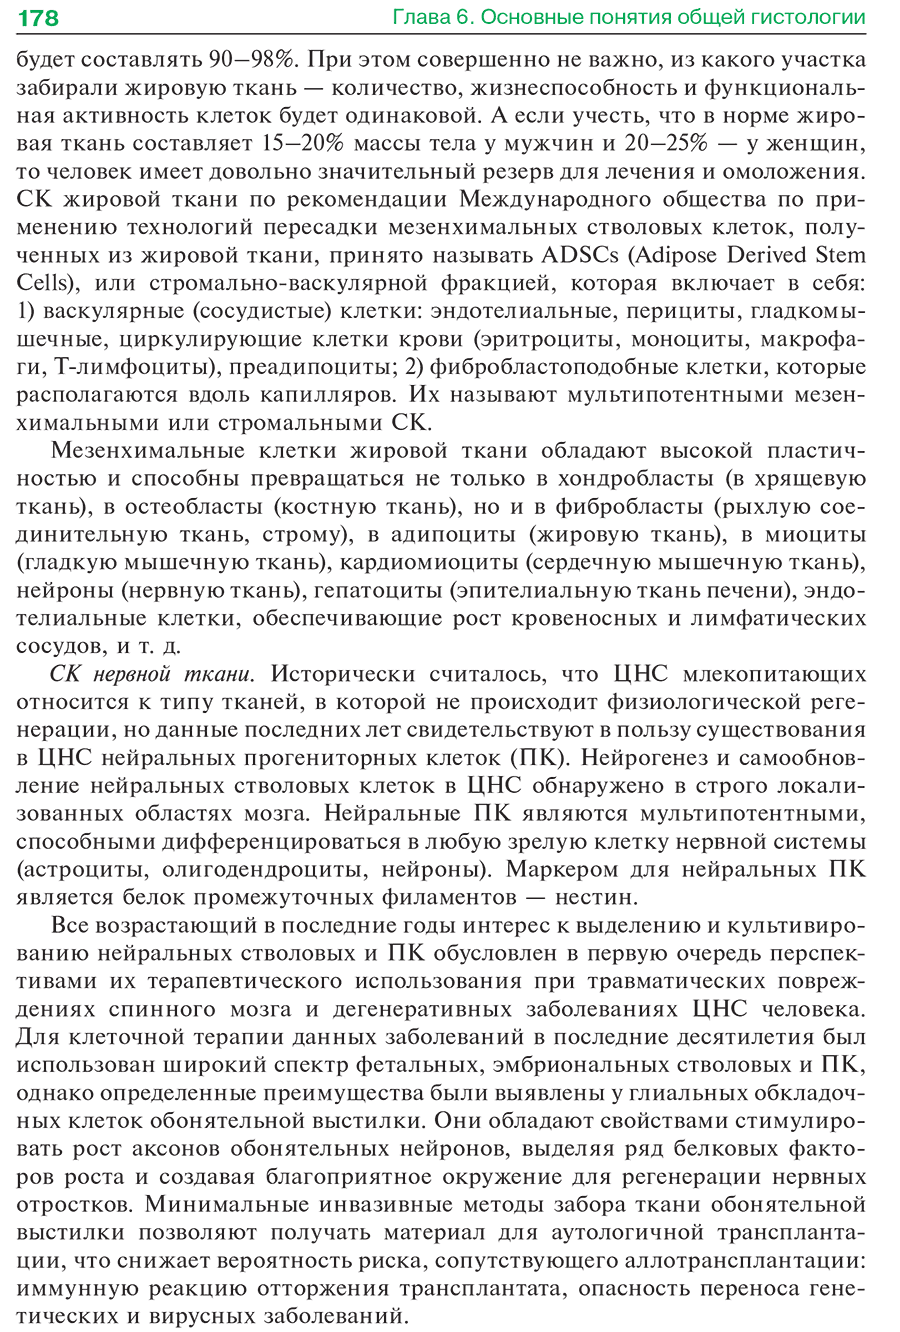 Пример страницы из книги "Гистология, эмбриология, цитология: учебник" - Афанасьев Ю. И.